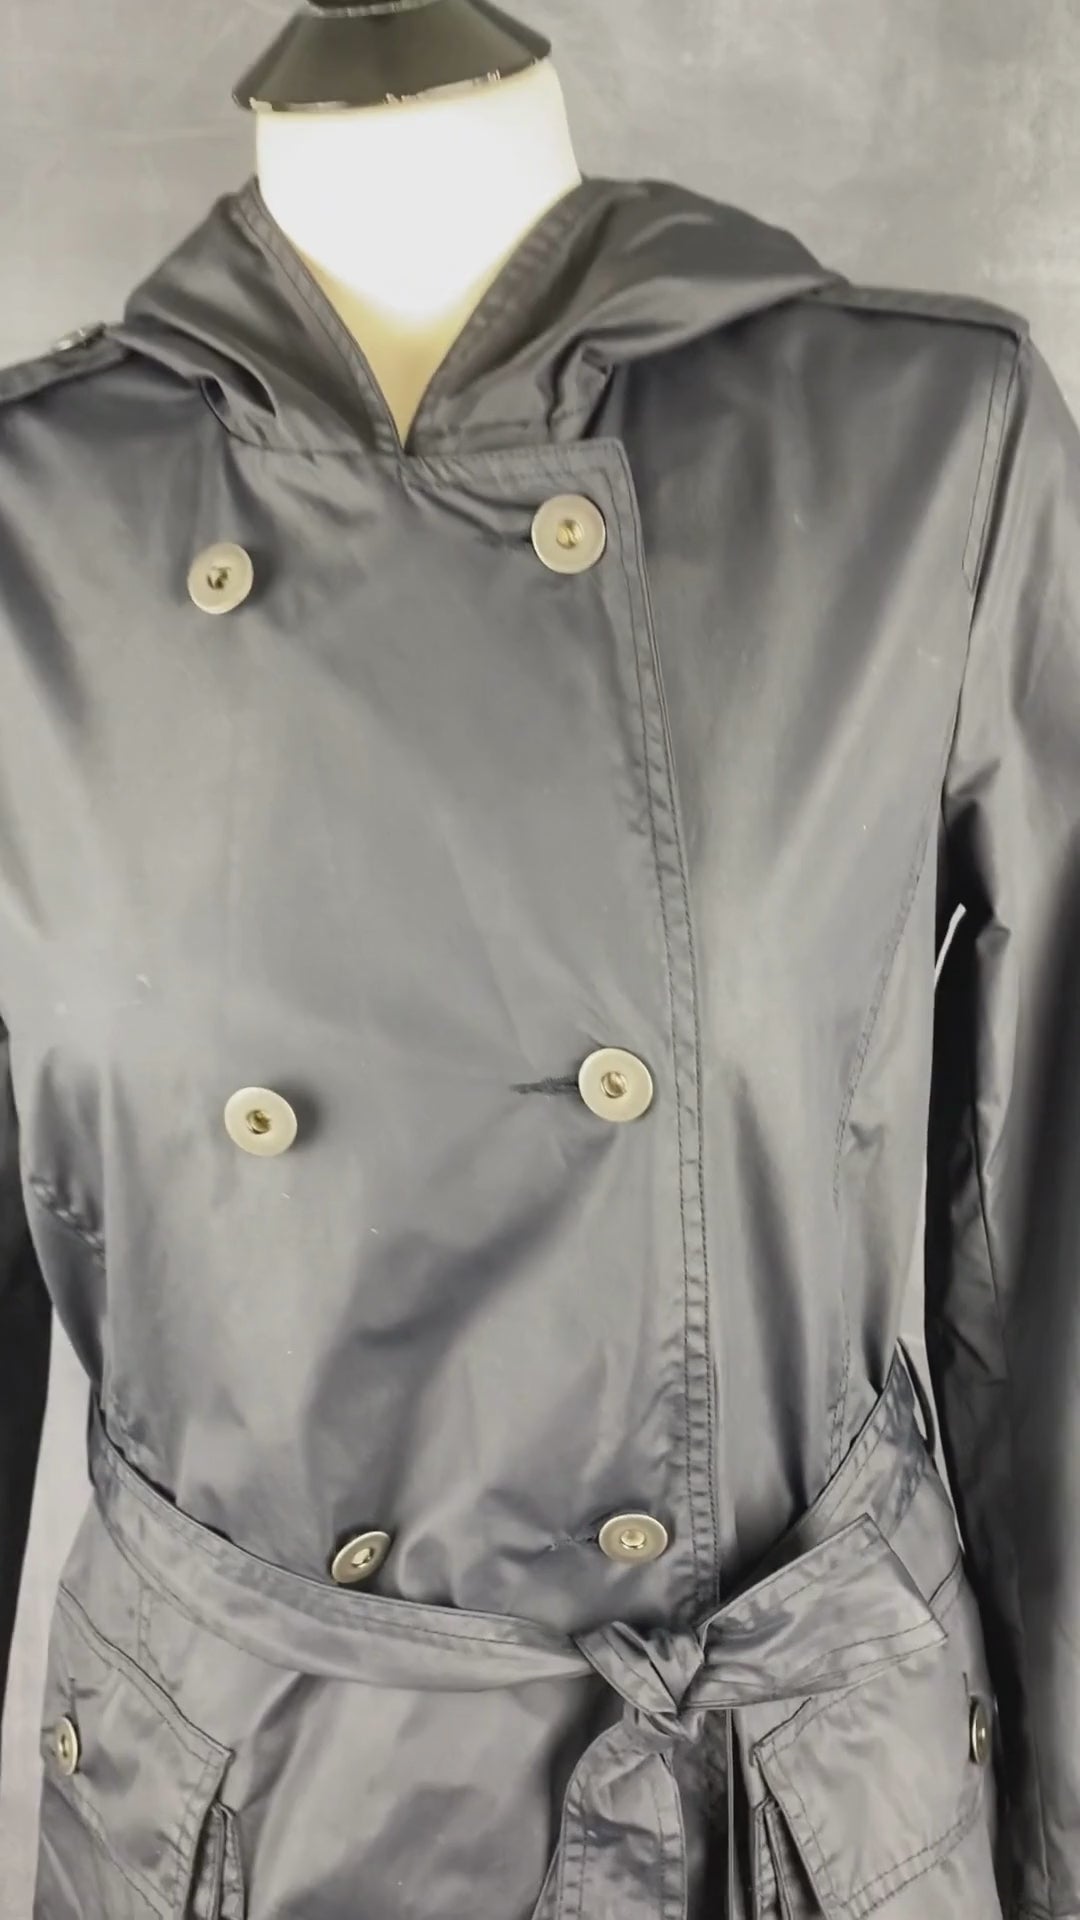 Manteau noir imperméable style trench M0851, taille 2 (xxs-xs-s). Vue de la vidéo qui présente tous les détails du trench.